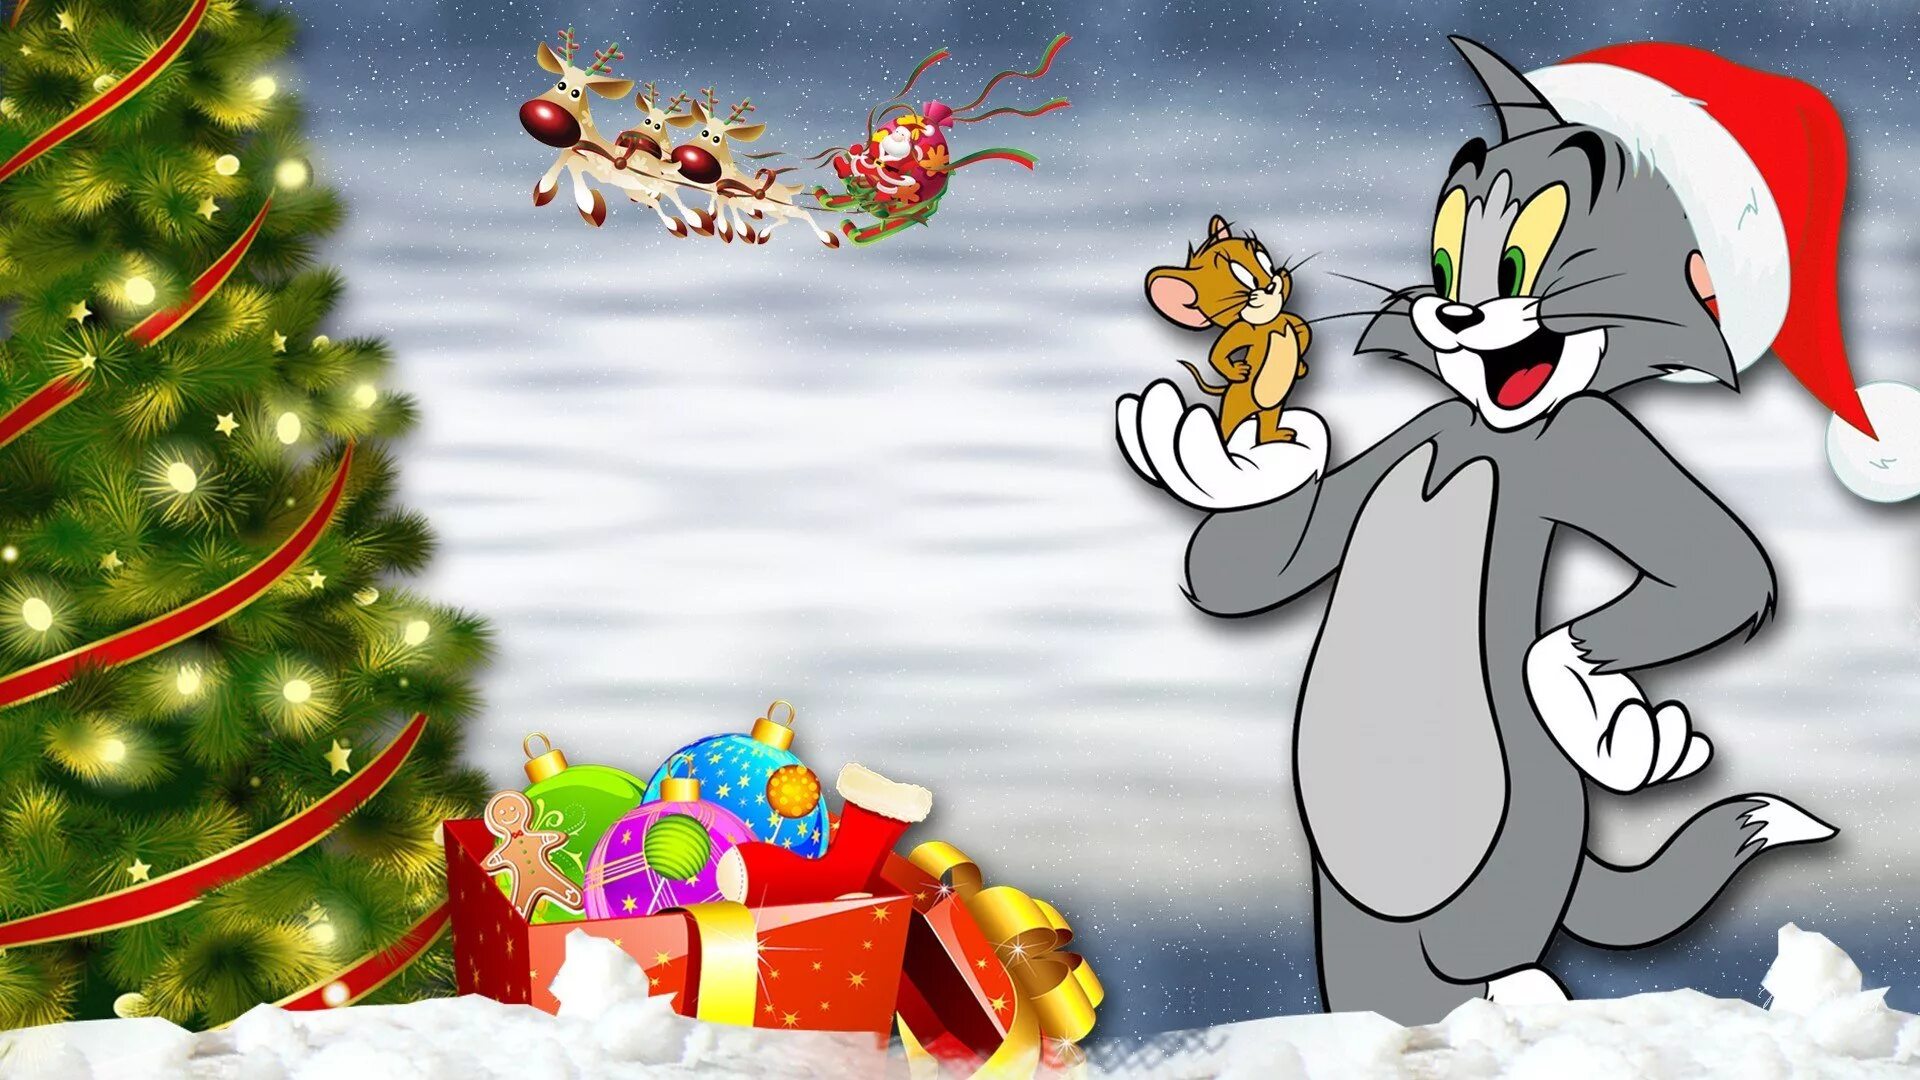 Tom and Jerry Рождество. Новогодние мультяшные персонажи. Новогодние картинки мультяшные. Новогодние герои мультфильмов. Том и джерри новогодние